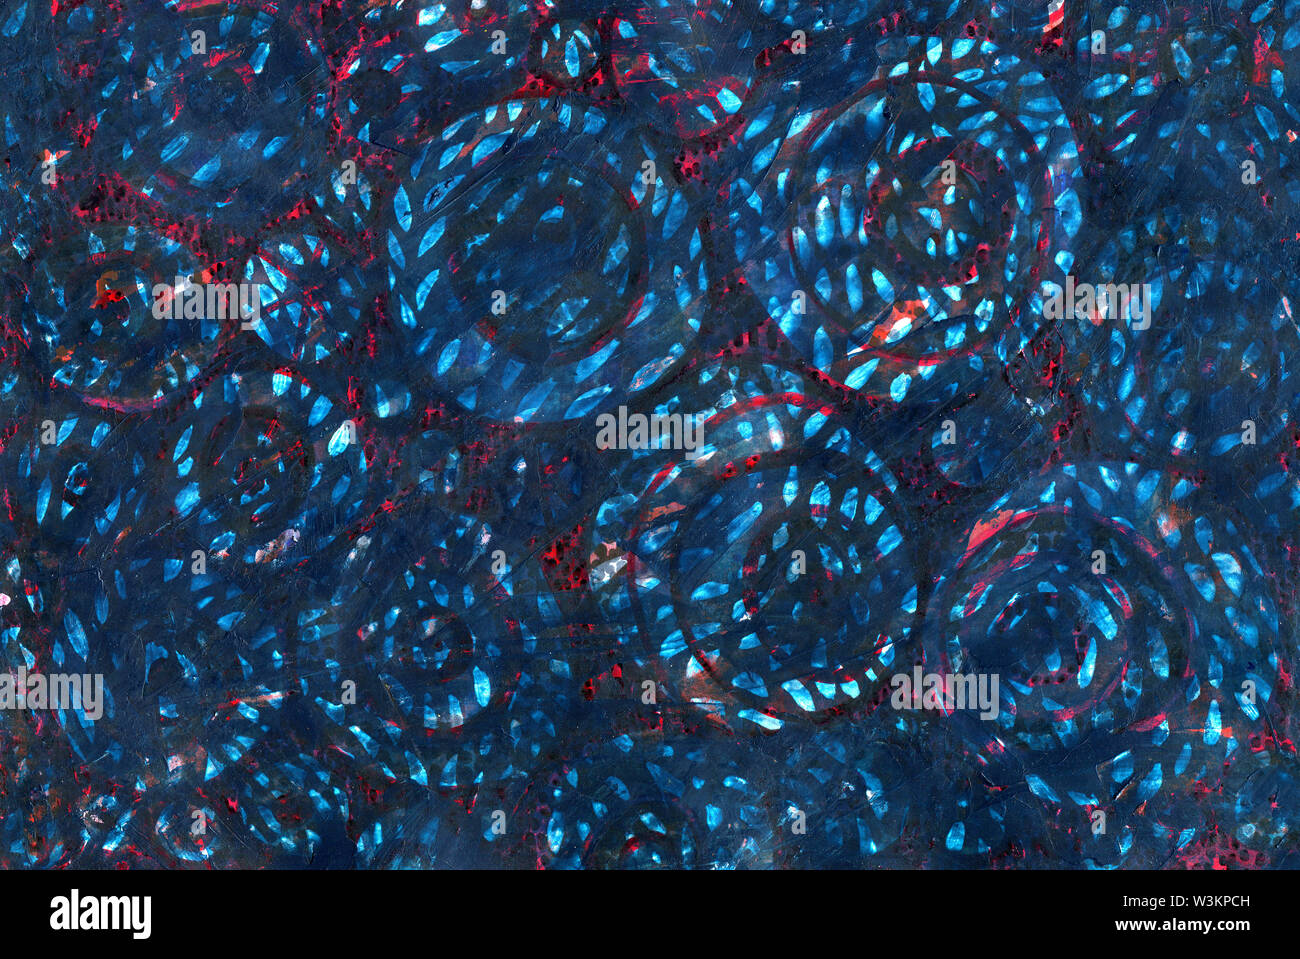 Abstracto fondo azul y rojo. Textura grunge con rayas, puntos y líneas, círculos y con manchas blancas. Editorial pincel, capullos de células del cuerpo. Foto de stock